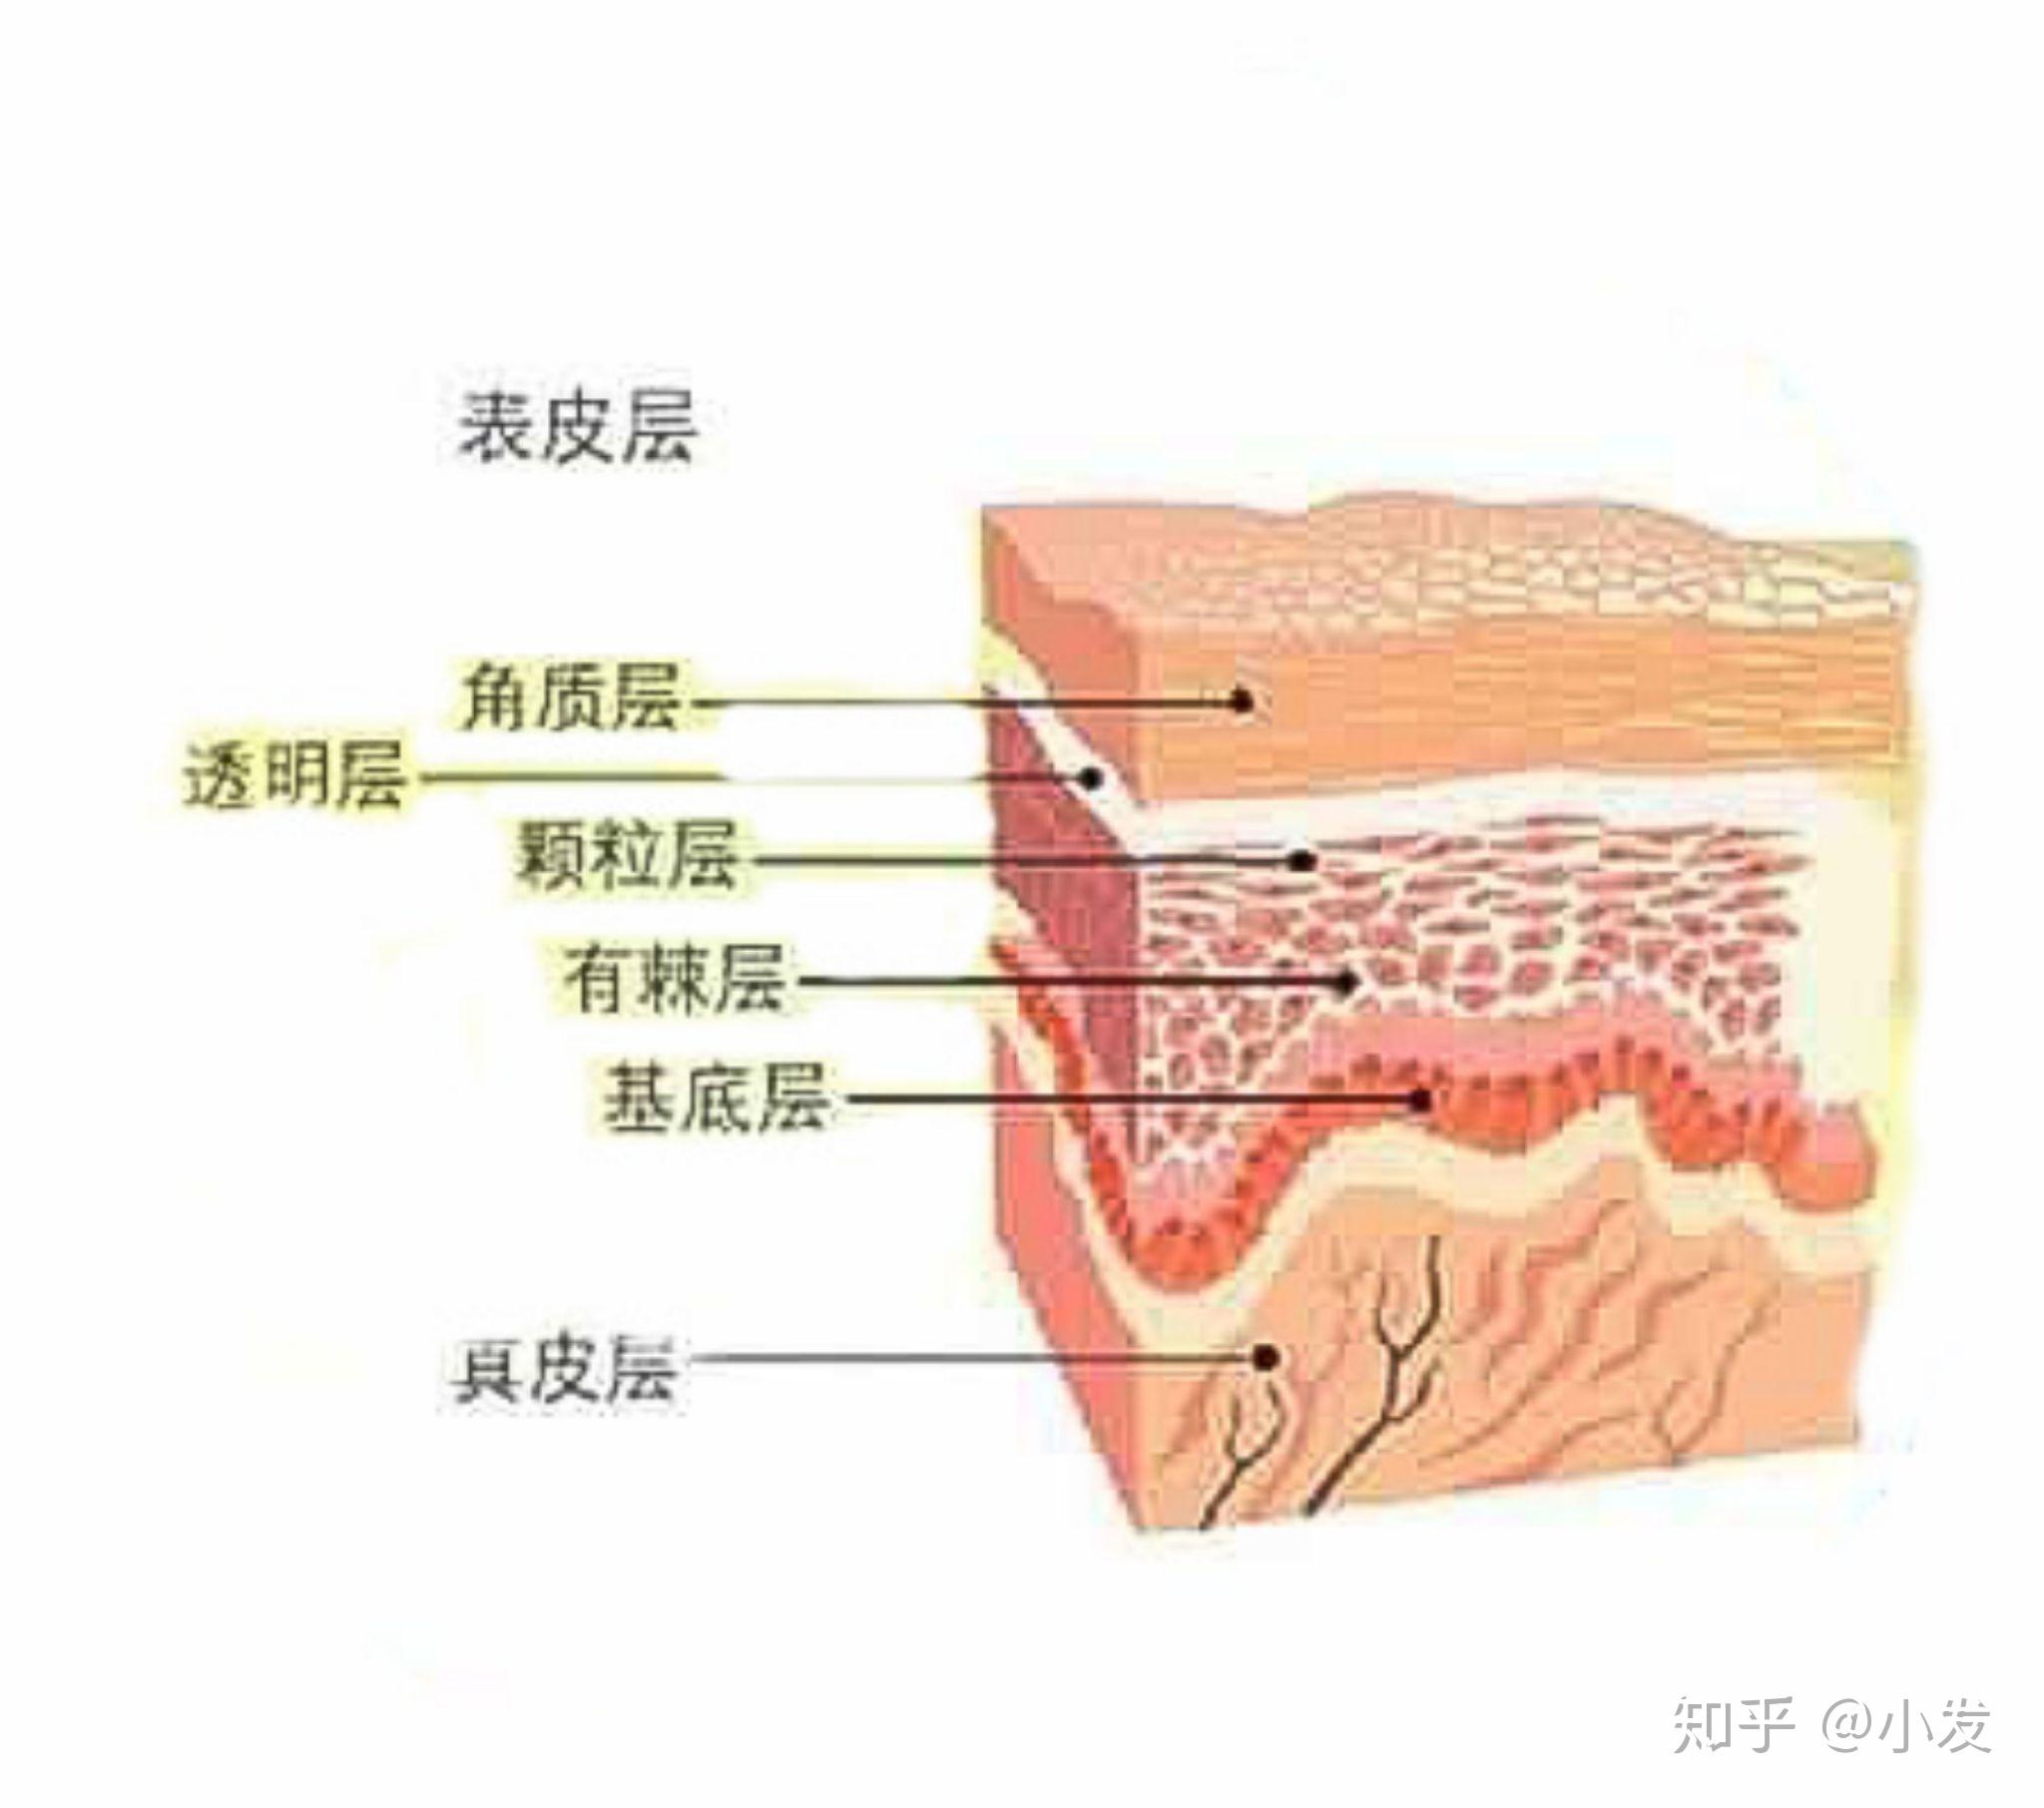 中胚层 真皮层图片